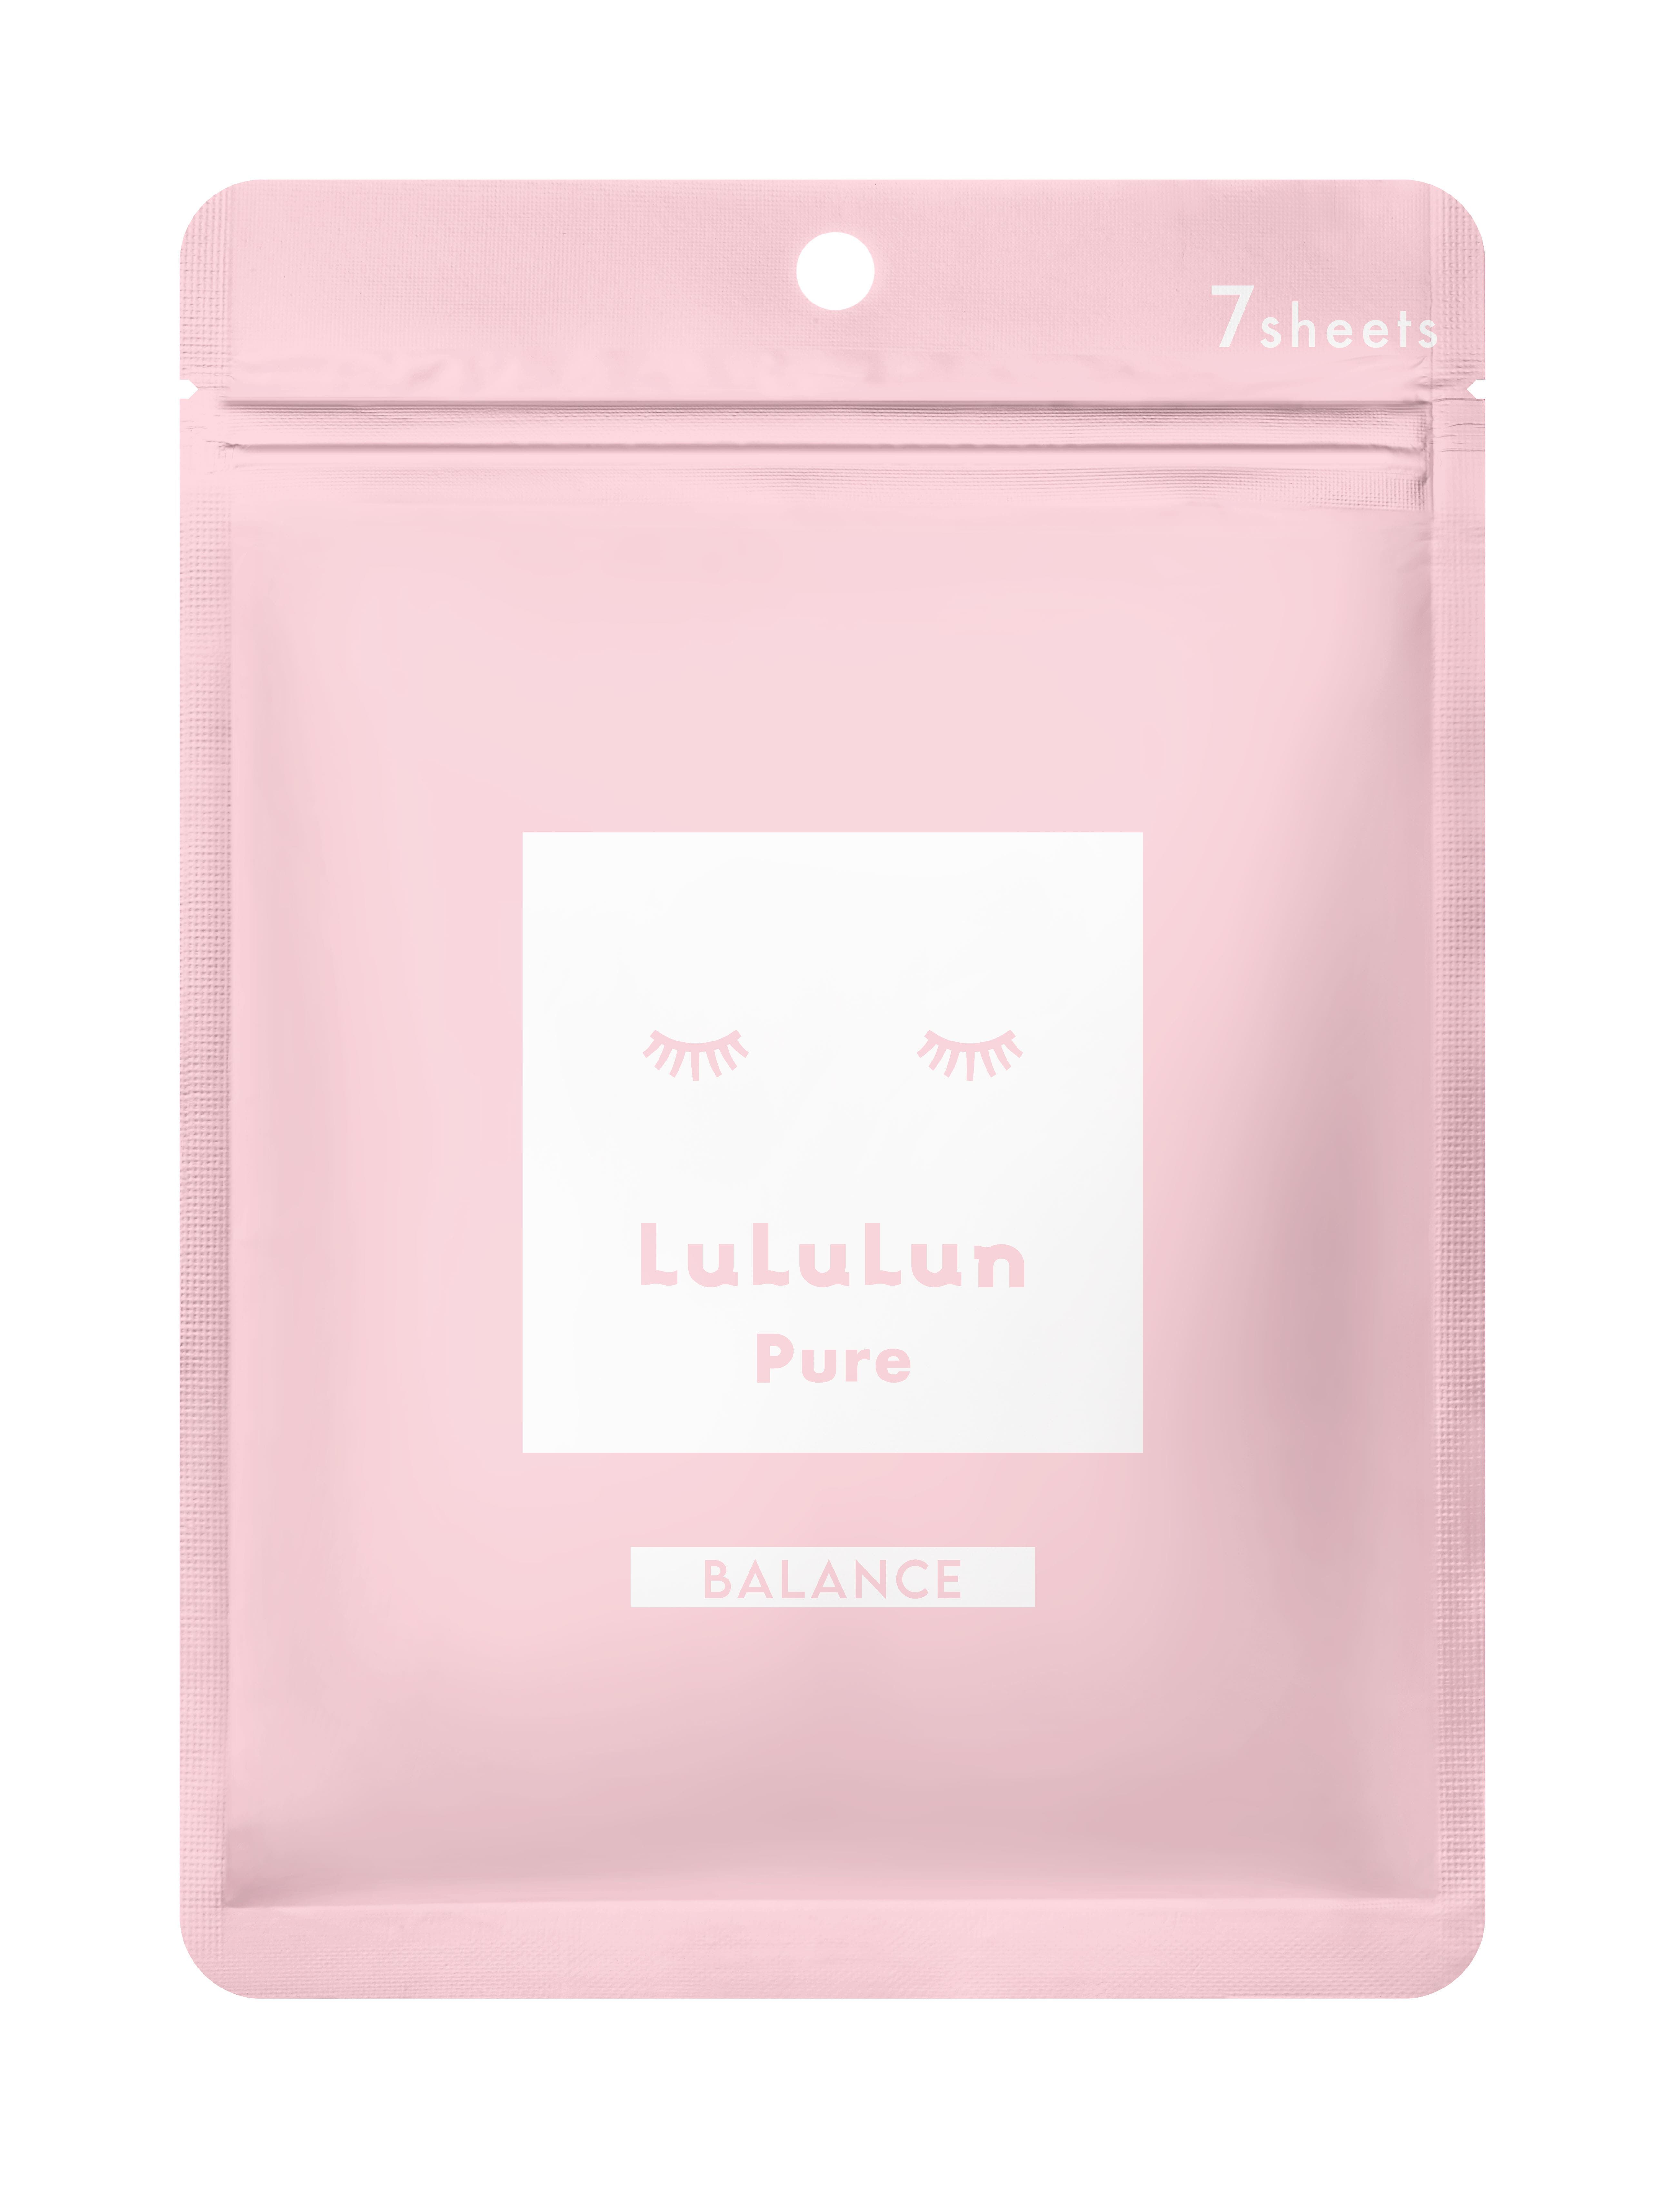 Маска для лица Lululun Pure Balance, 7 шт/1 упаковка